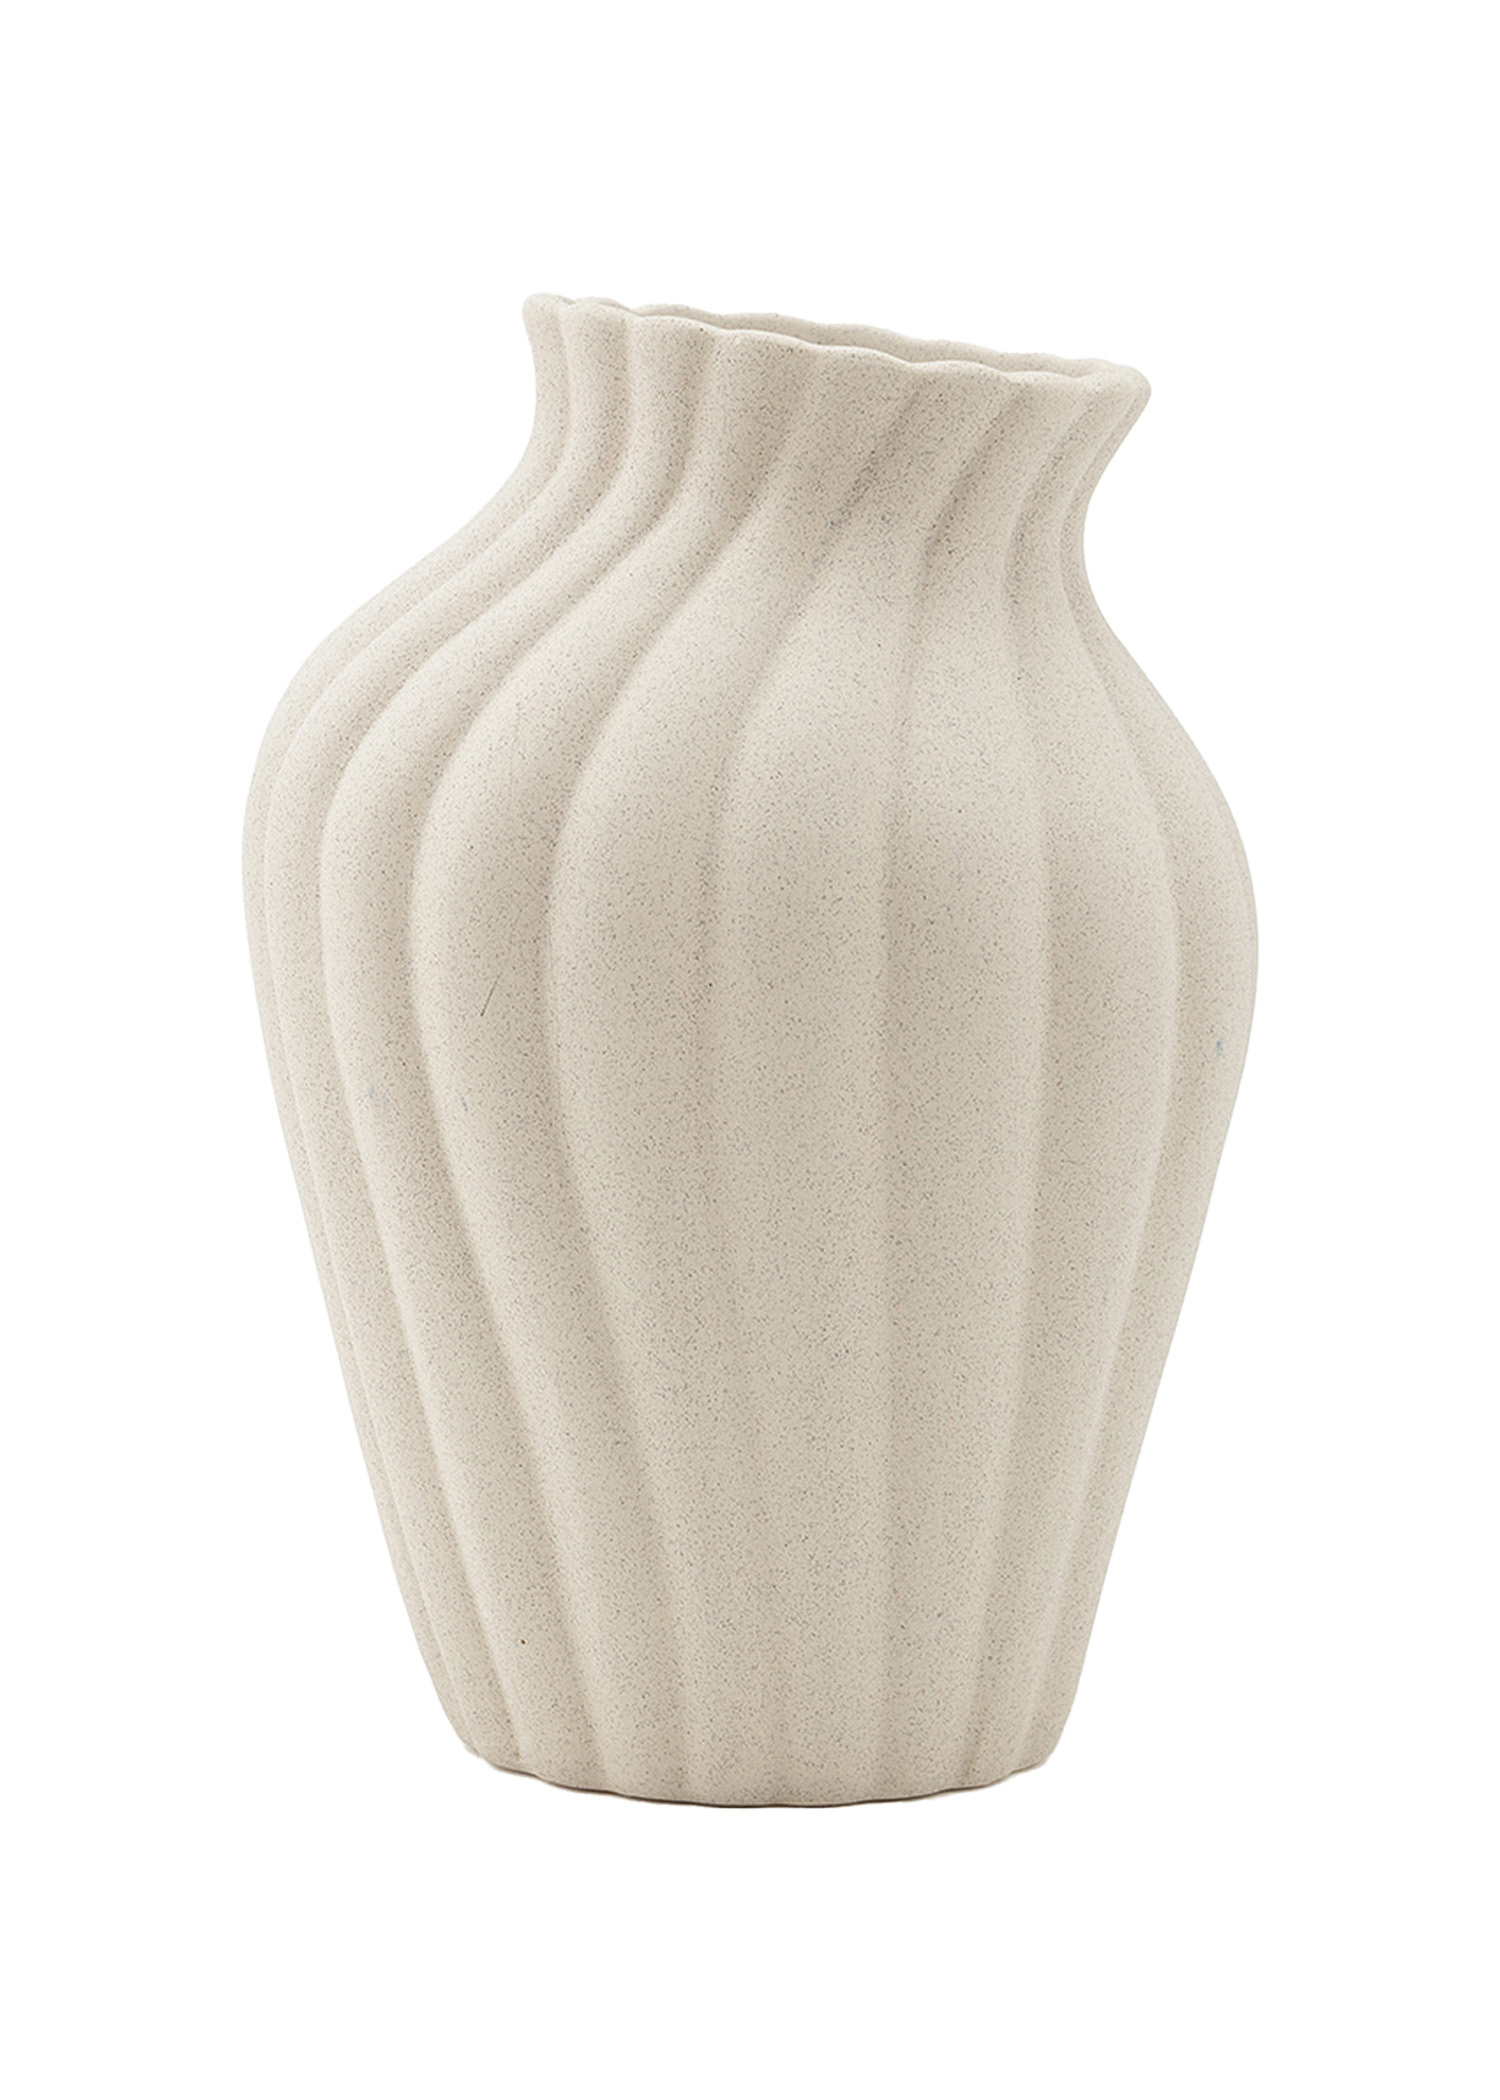 Large stoneware vase Image 0